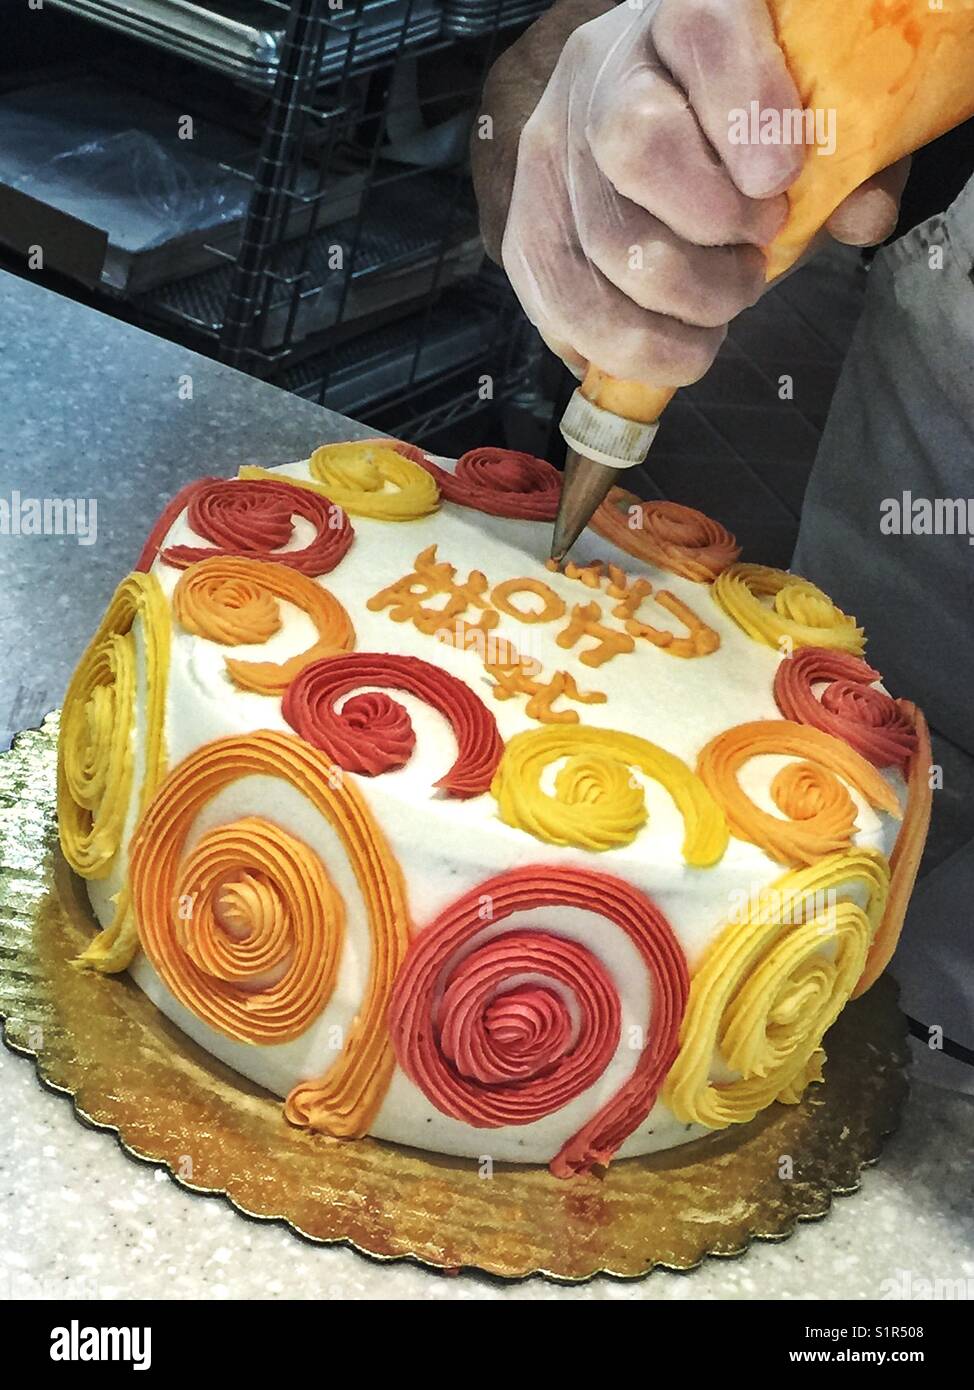 Un uomo scrive su un colorato torta di compleanno con ciliegina Foto Stock